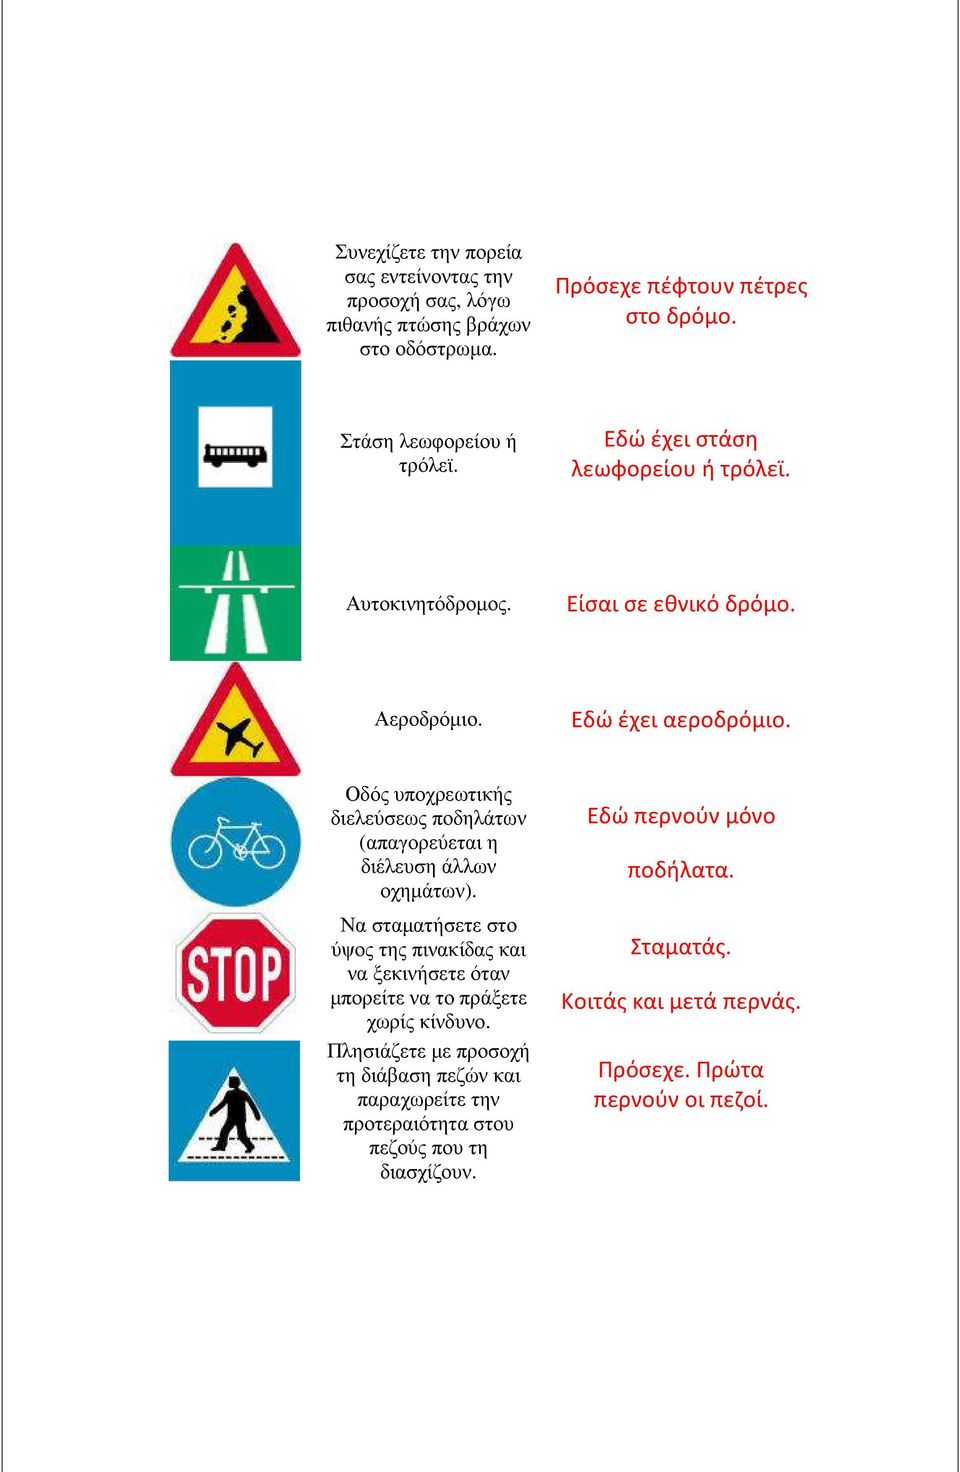 Οδός υποχρεωτικής διελεύσεως ποδηλάτων (απαγορεύεται η διέλευση άλλων οχηµάτων).